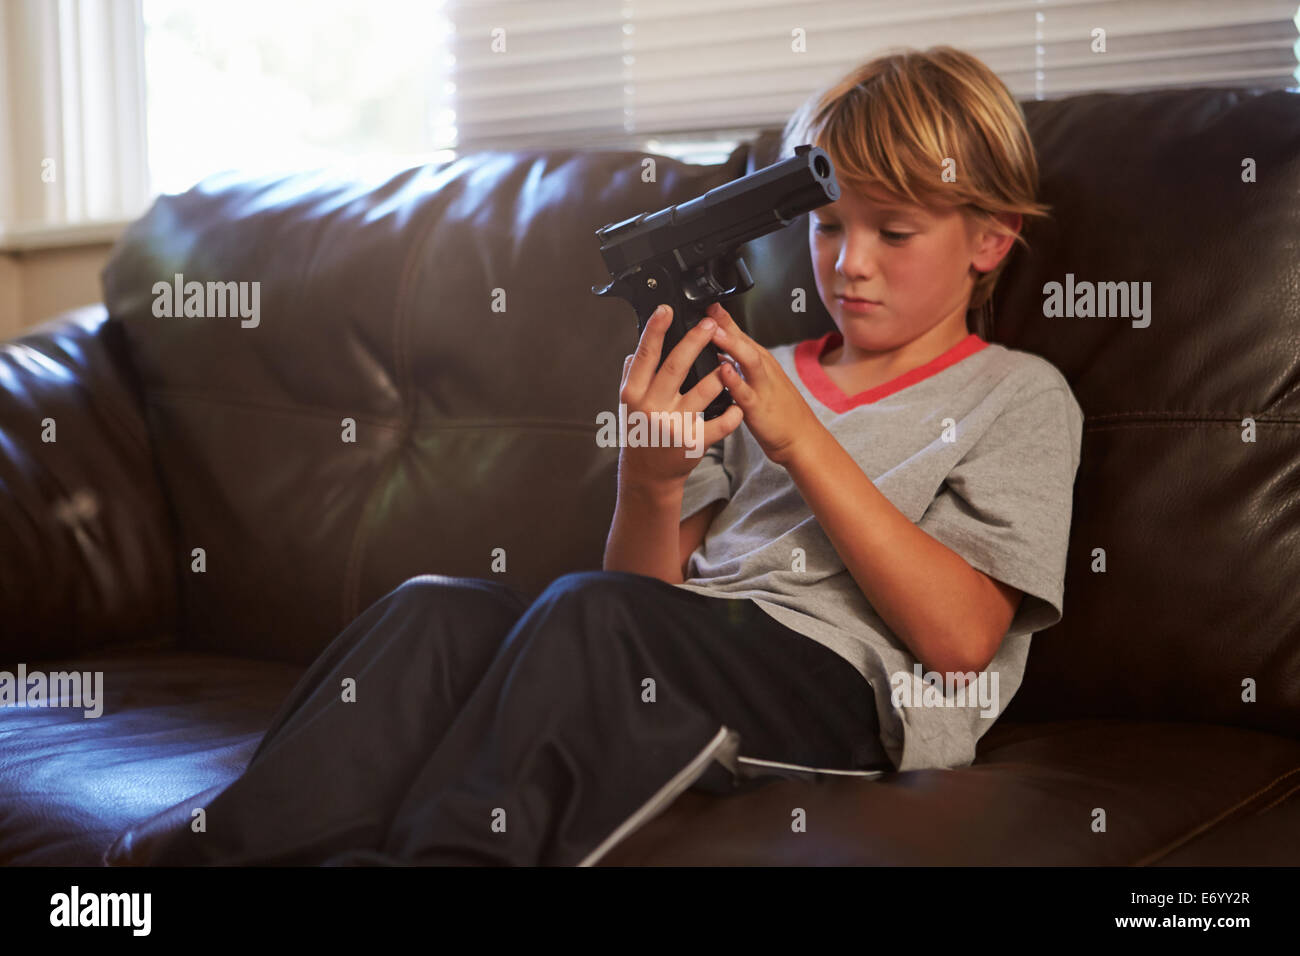 Niño jugando con la pistola del padre que ha encontrado en su casa Foto de stock